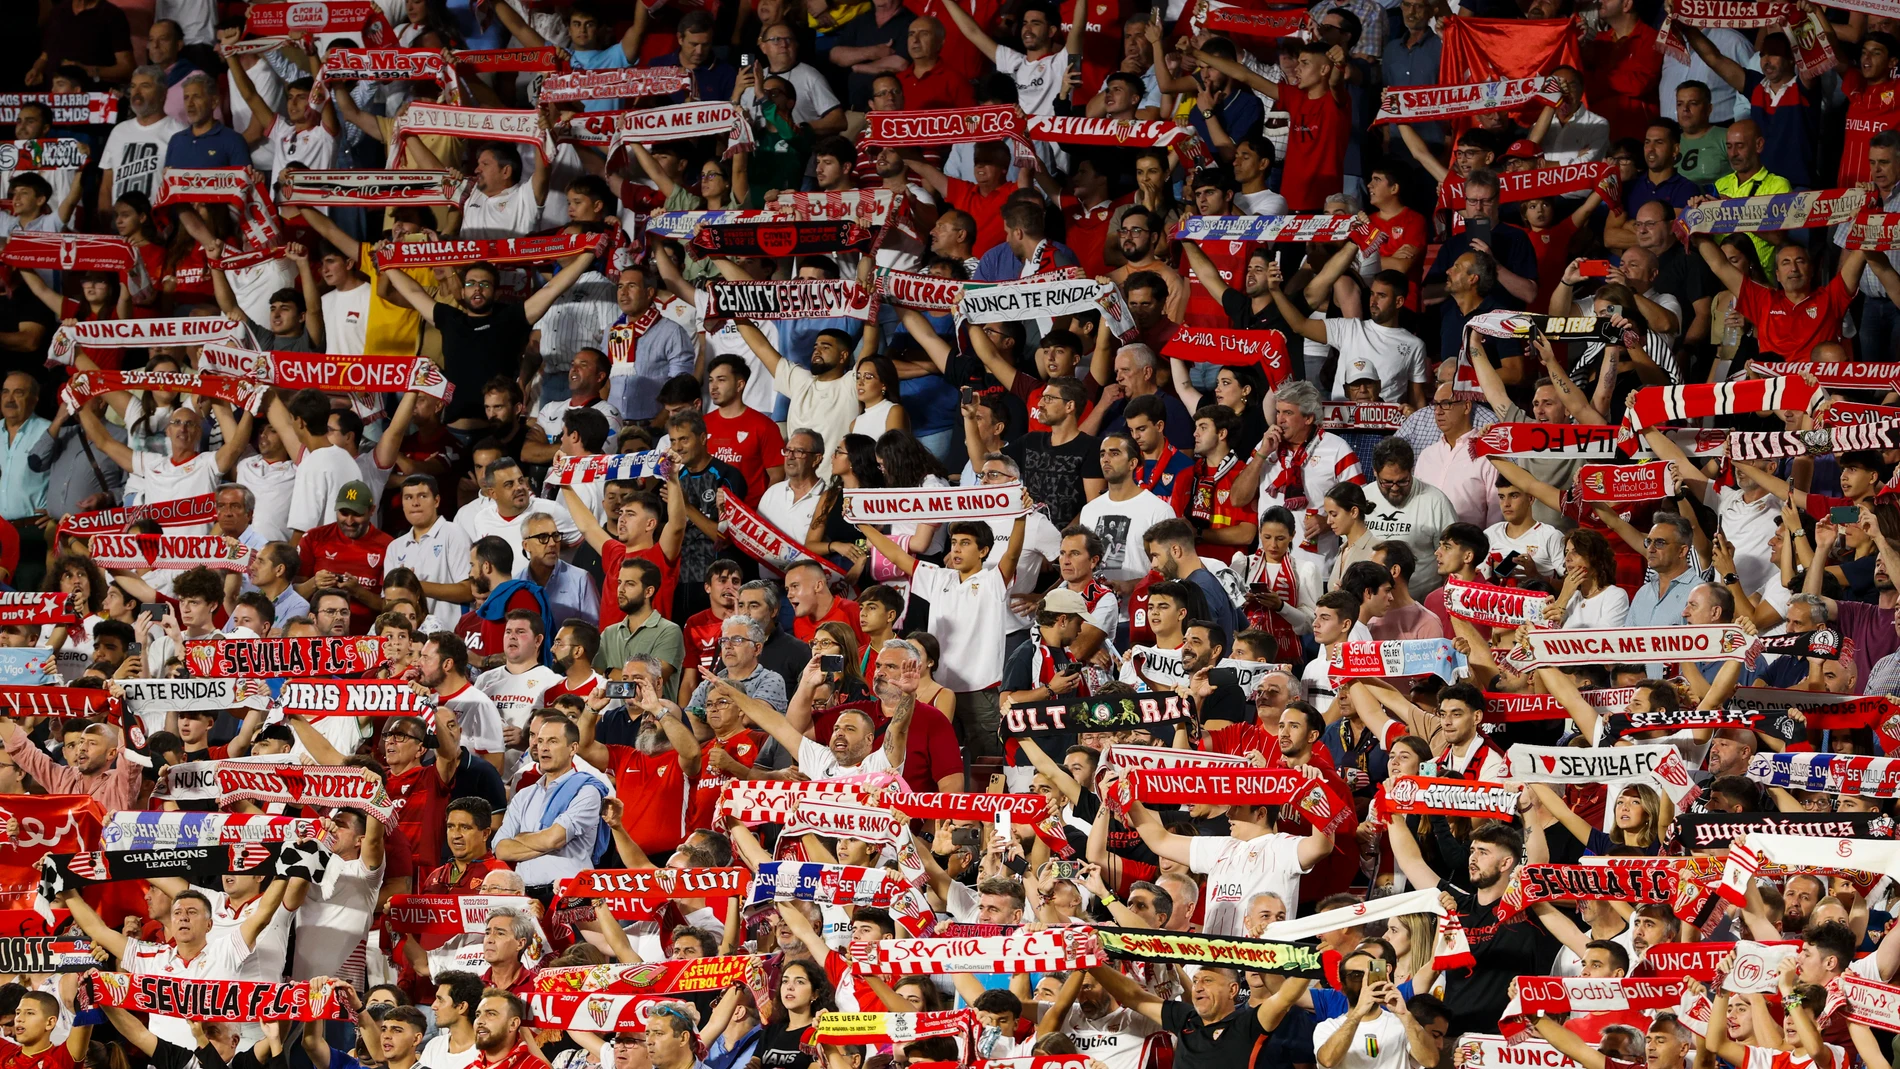 Aficionados del Sevilla FC en el estadio Sánchez Pizjuán